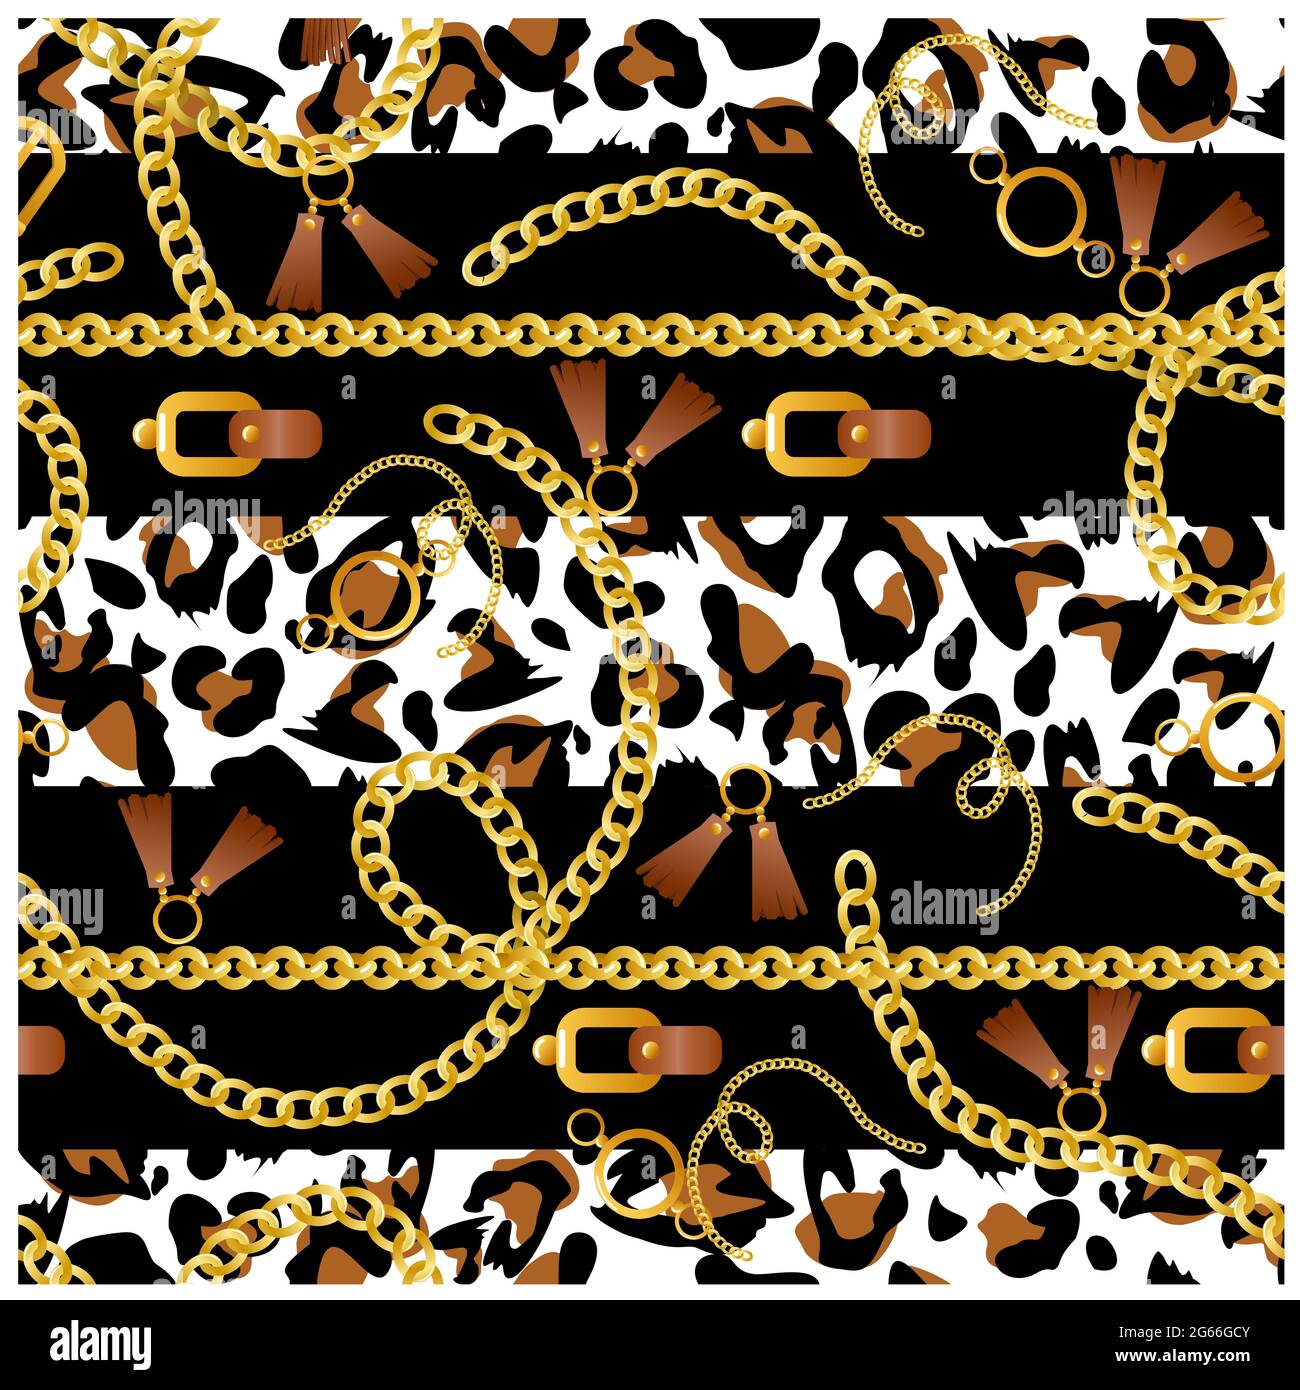 Illustrazione vettoriale del modello senza giunture con cinghie, catene, ancoraggi, monete su sfondo leopardo per il design del tessuto. Illustrazione Vettoriale